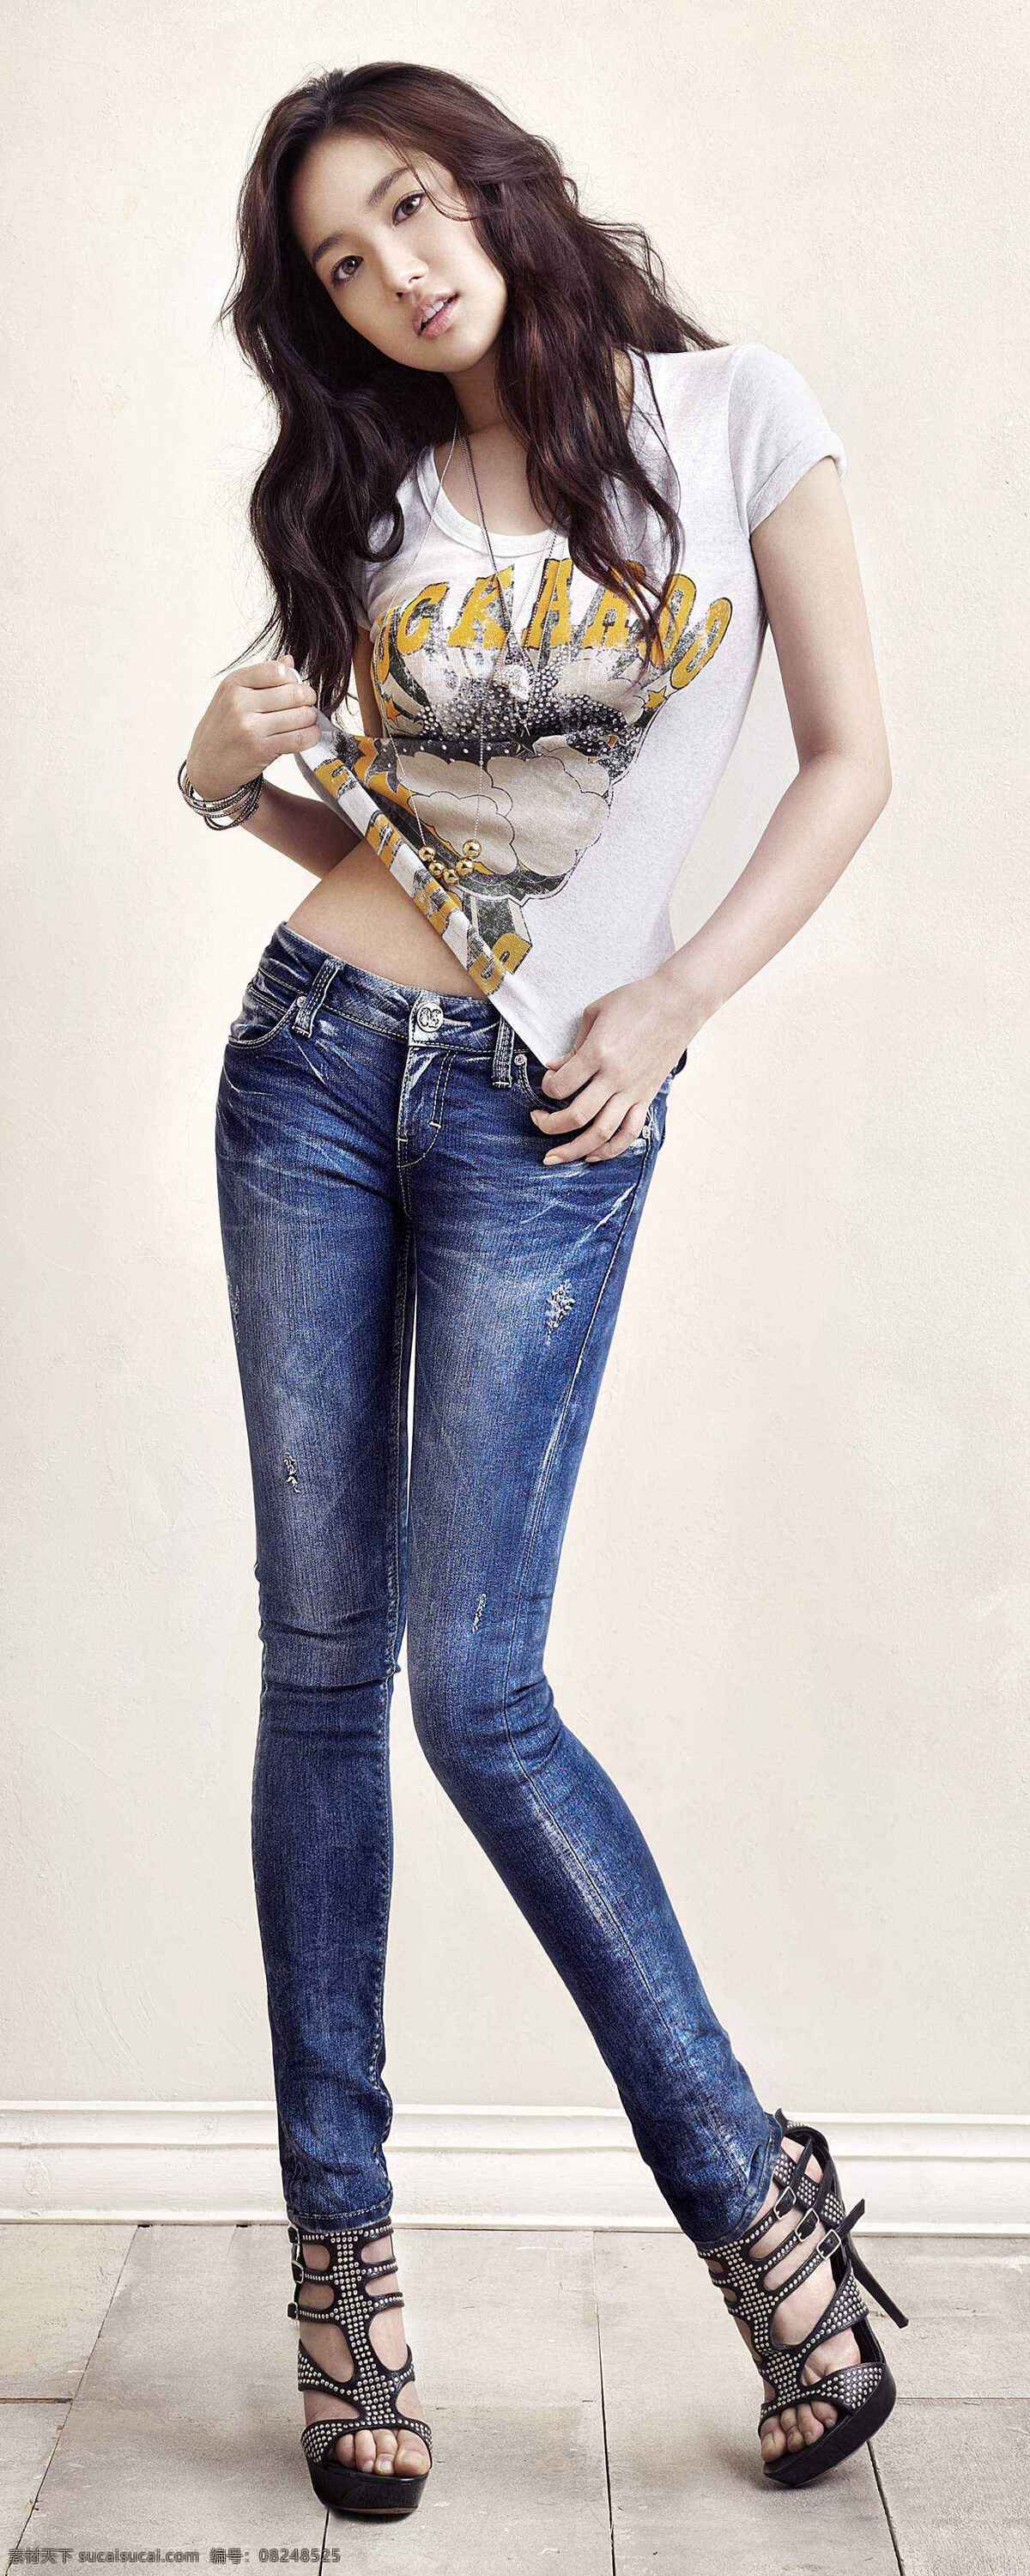 朴敏英 模特 女明星 女演员 韩国明星 明星 明星美腿 明星偶像 人物图库